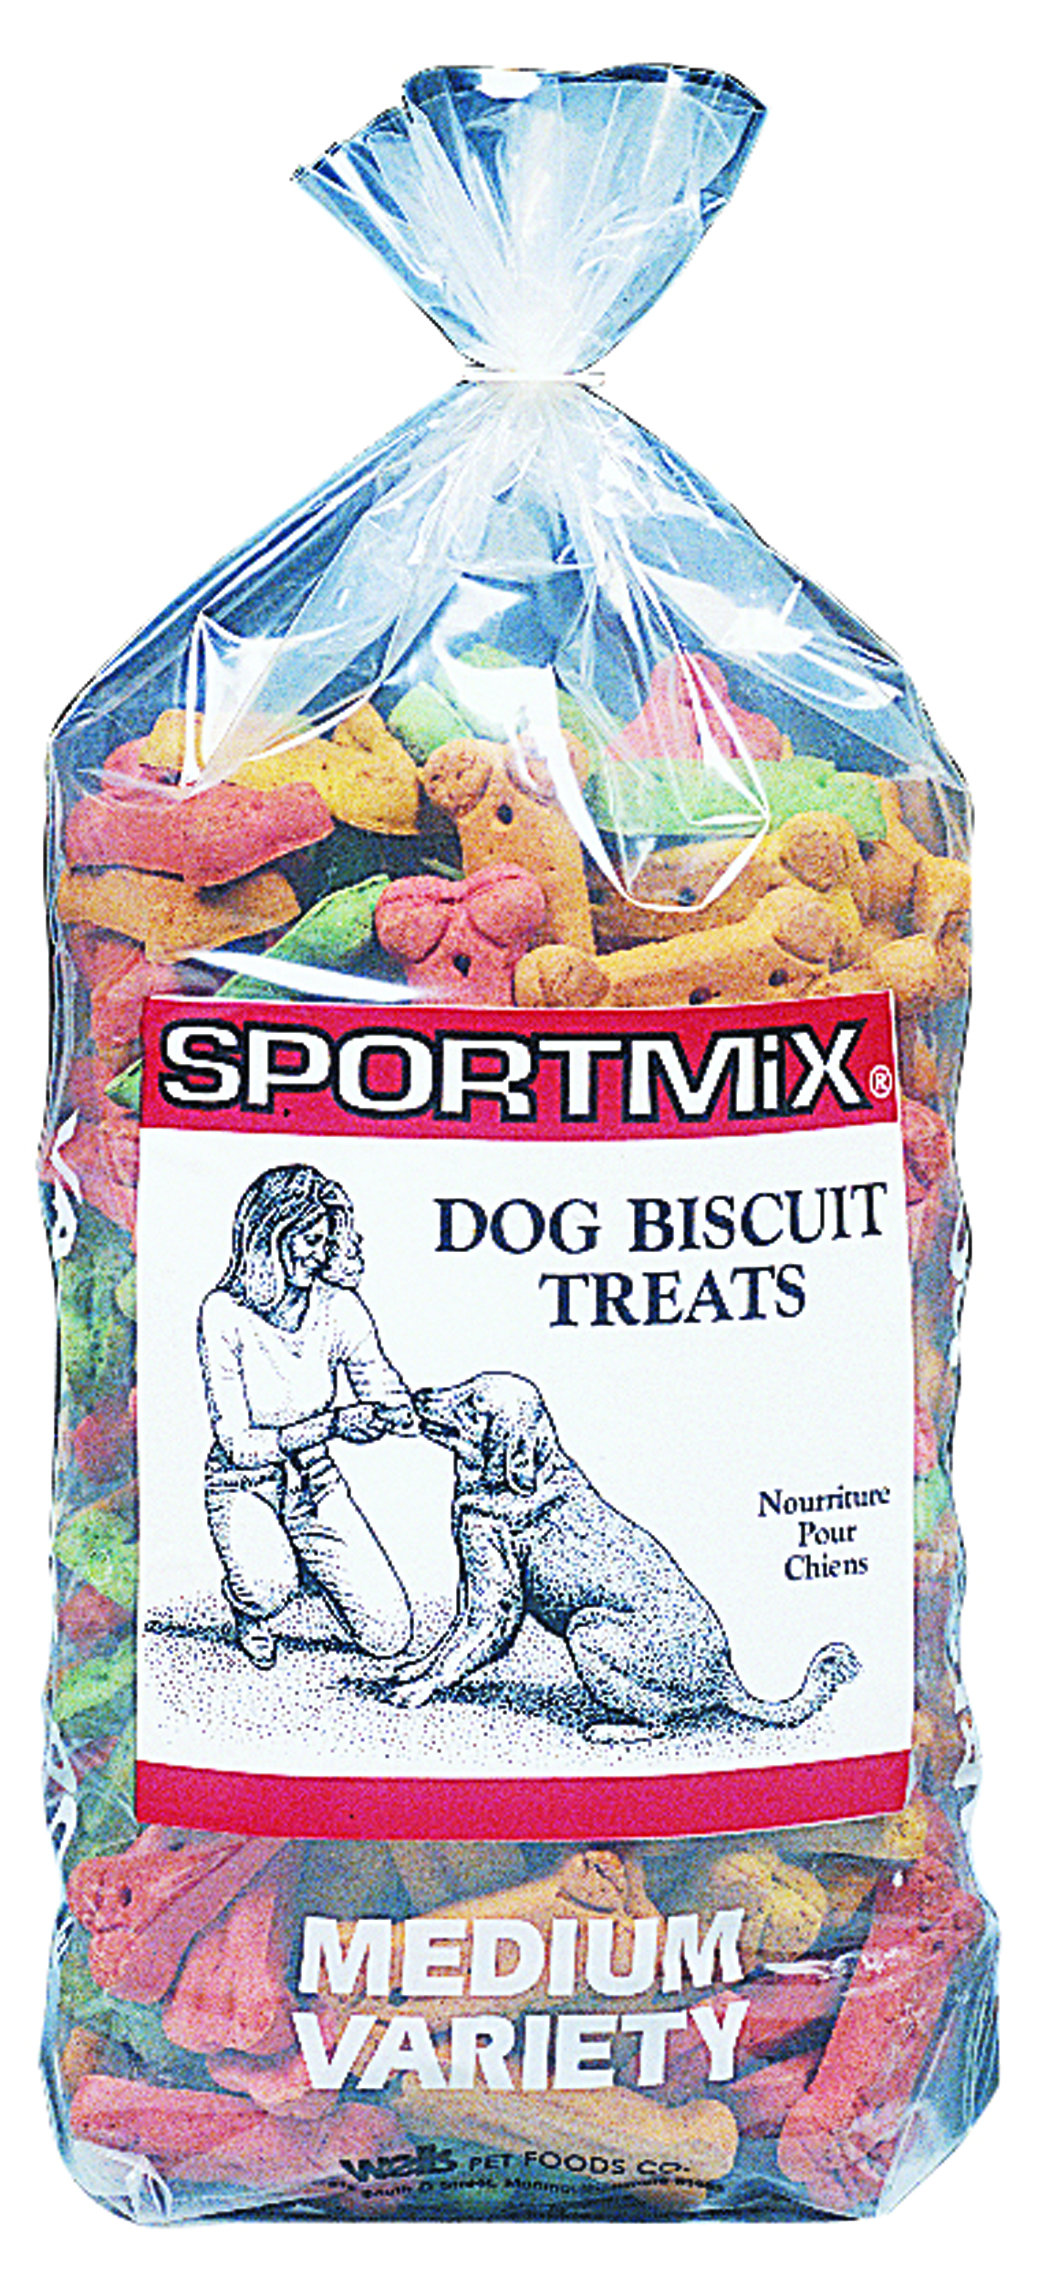 SPORTMIX VARIETY DOG BISCUIT